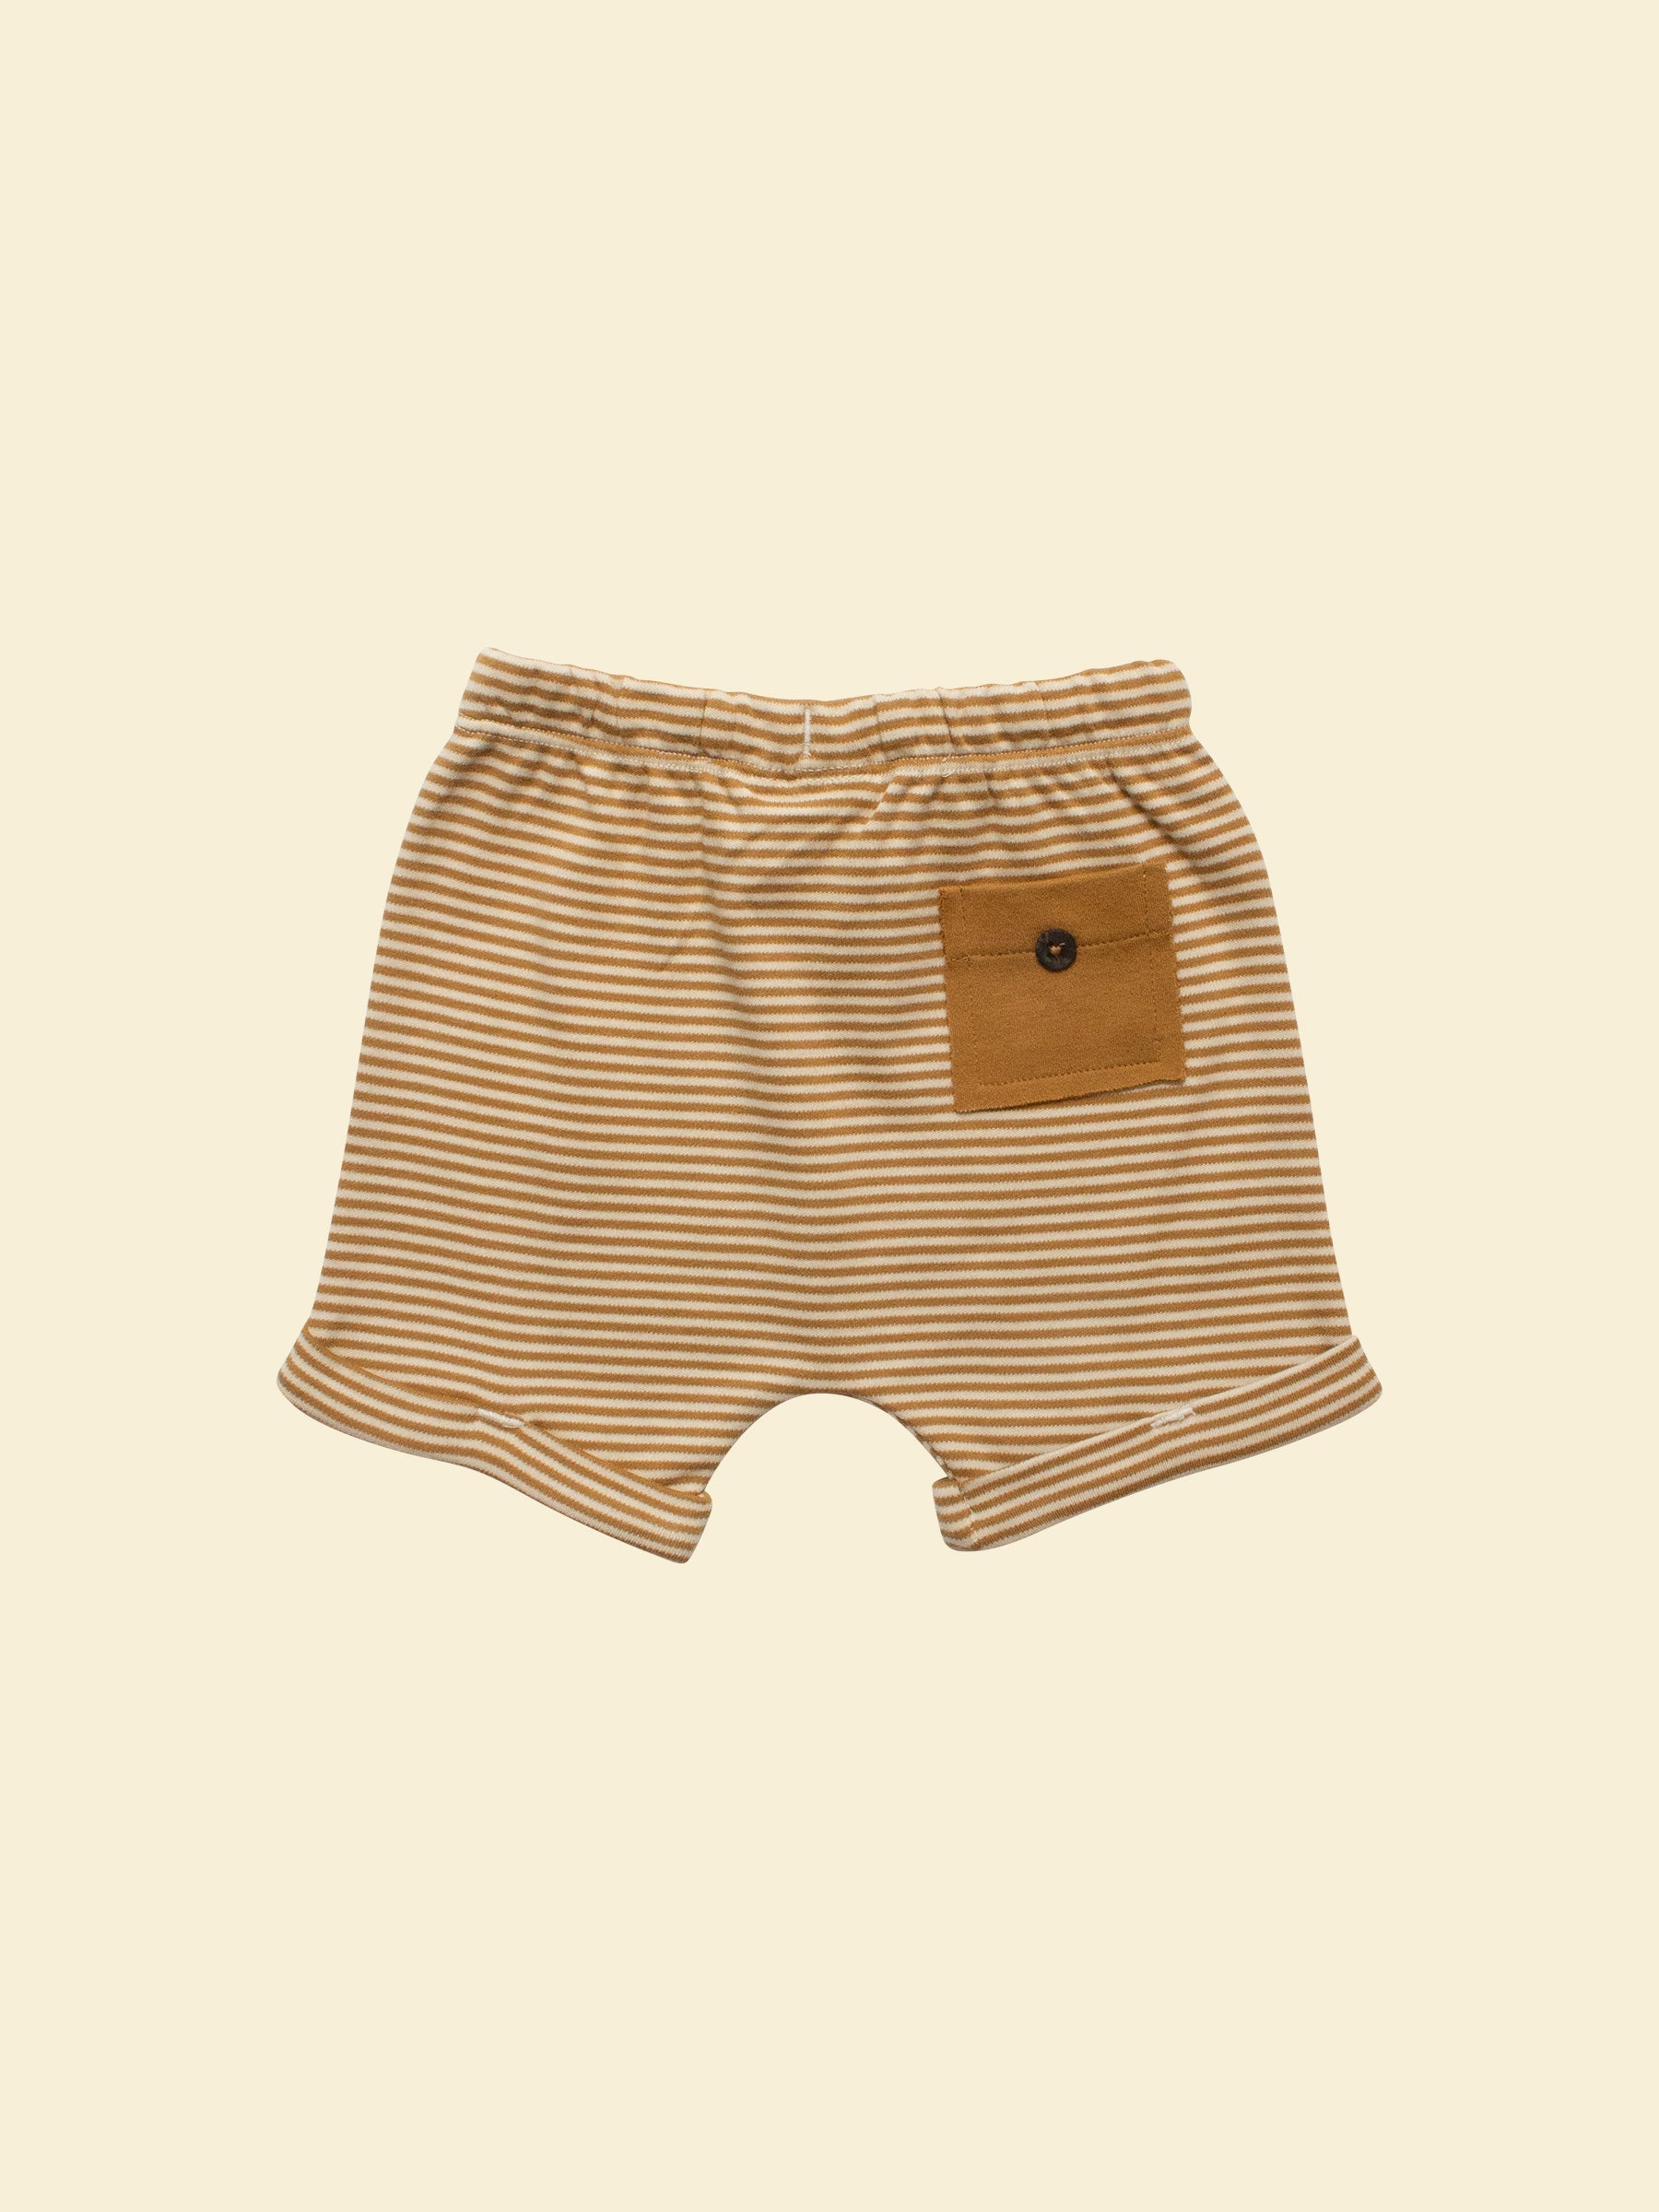 Unisex Shorts - Ochre Stripe (back)